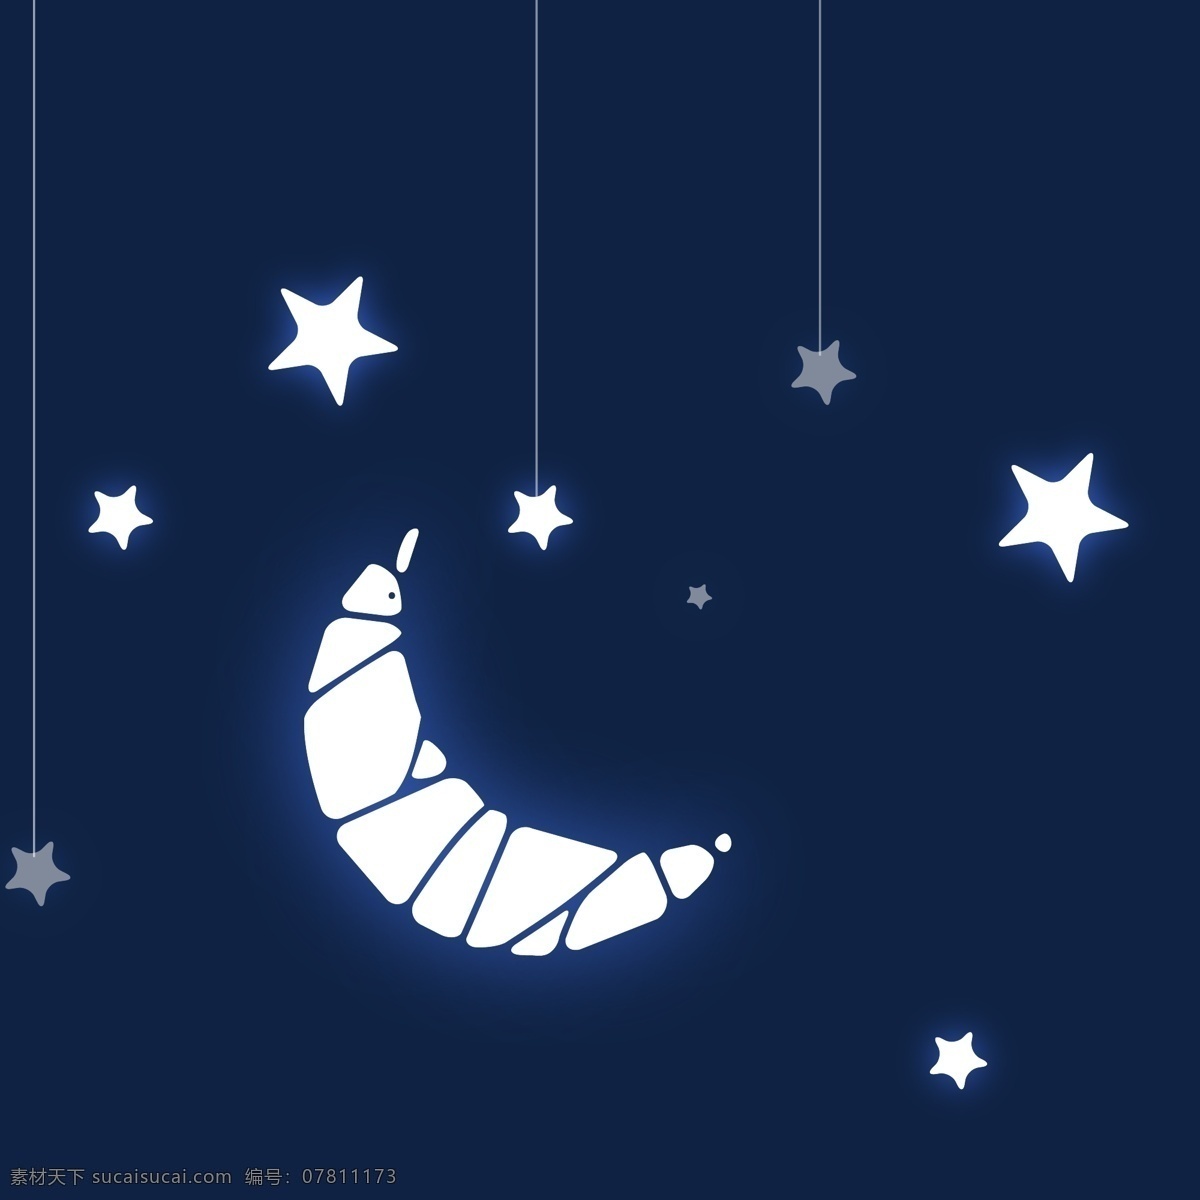 月亮 星空 背景图片 超 清 月亮素材 蓝色背景 抽象素材 广告背景 模板设计 版面设计背景